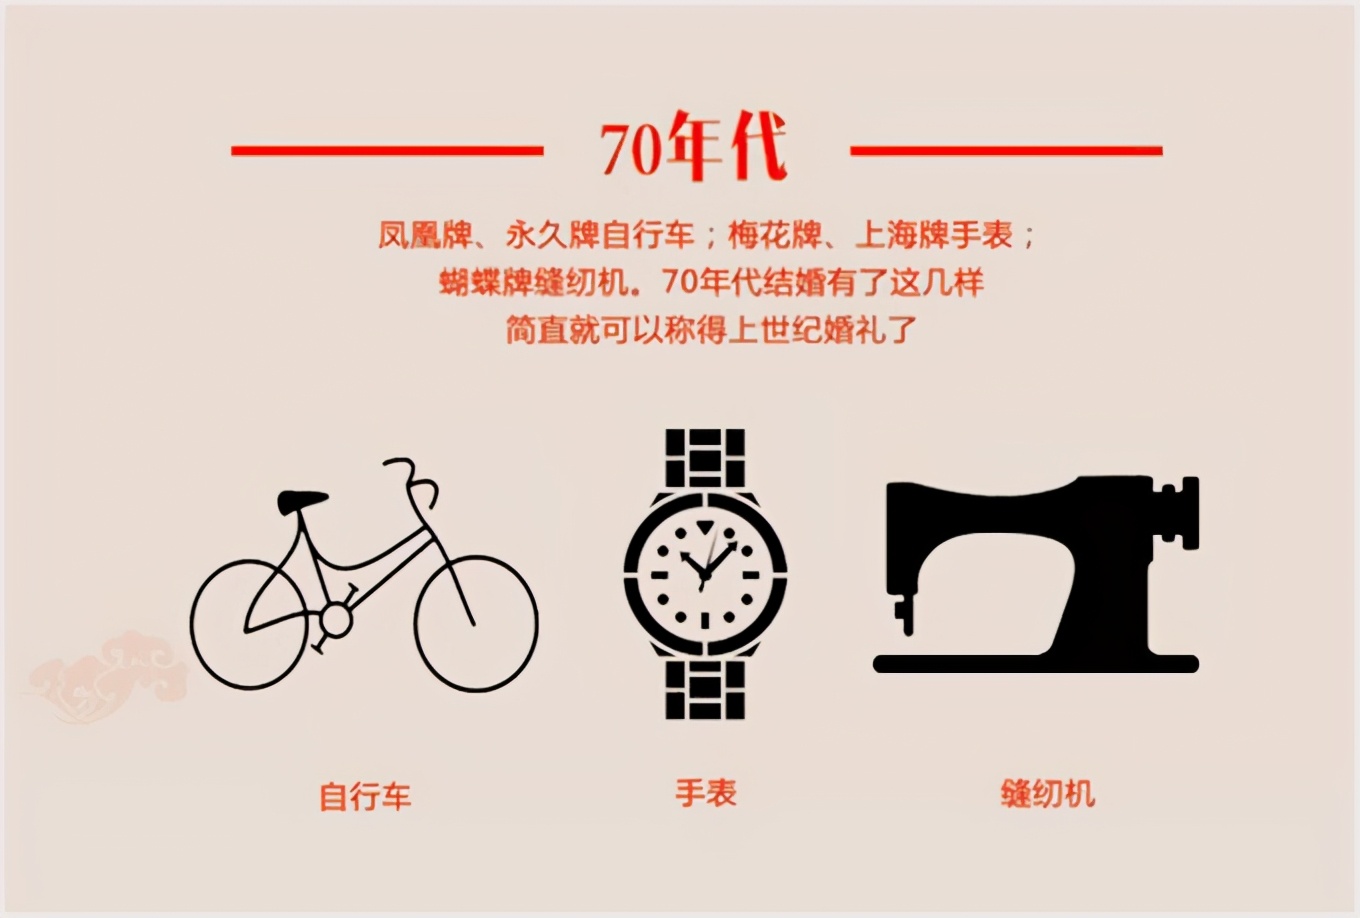 凤凰自行车是哪里生产的（关于凤凰自行车的品牌发展史）